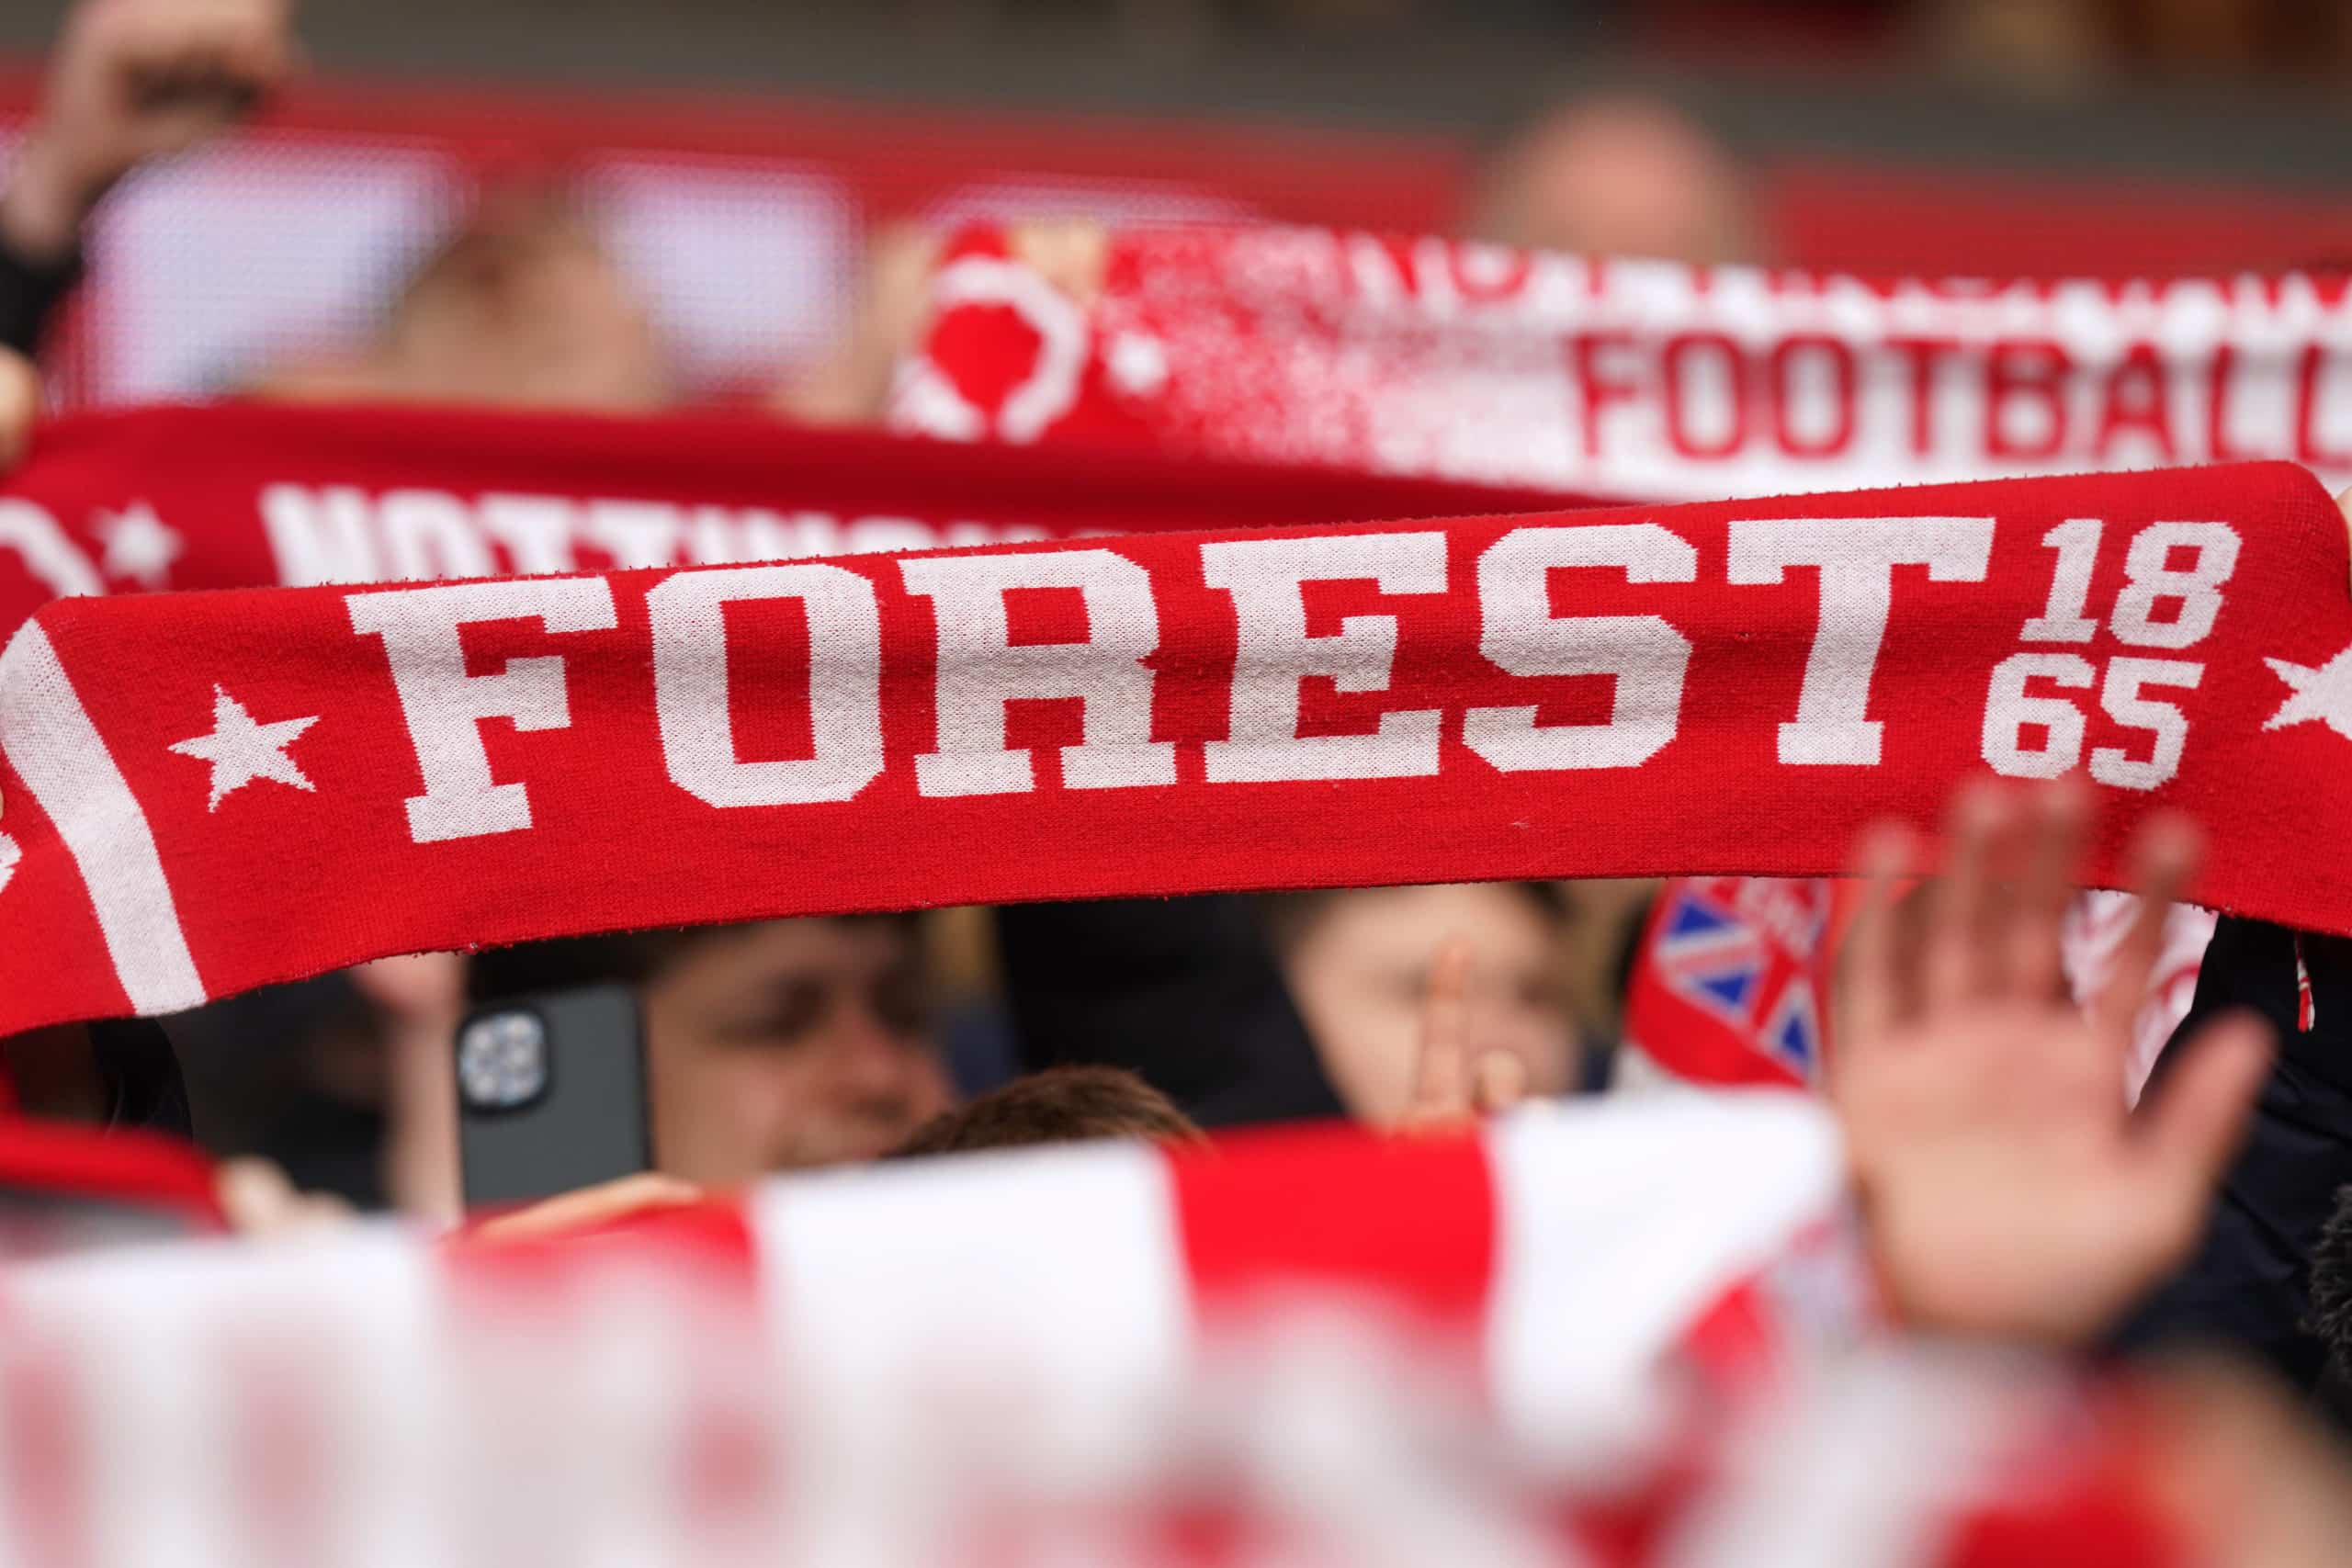 - Nottingham Forest penalizado pela Premier League por violação das regras financeiras